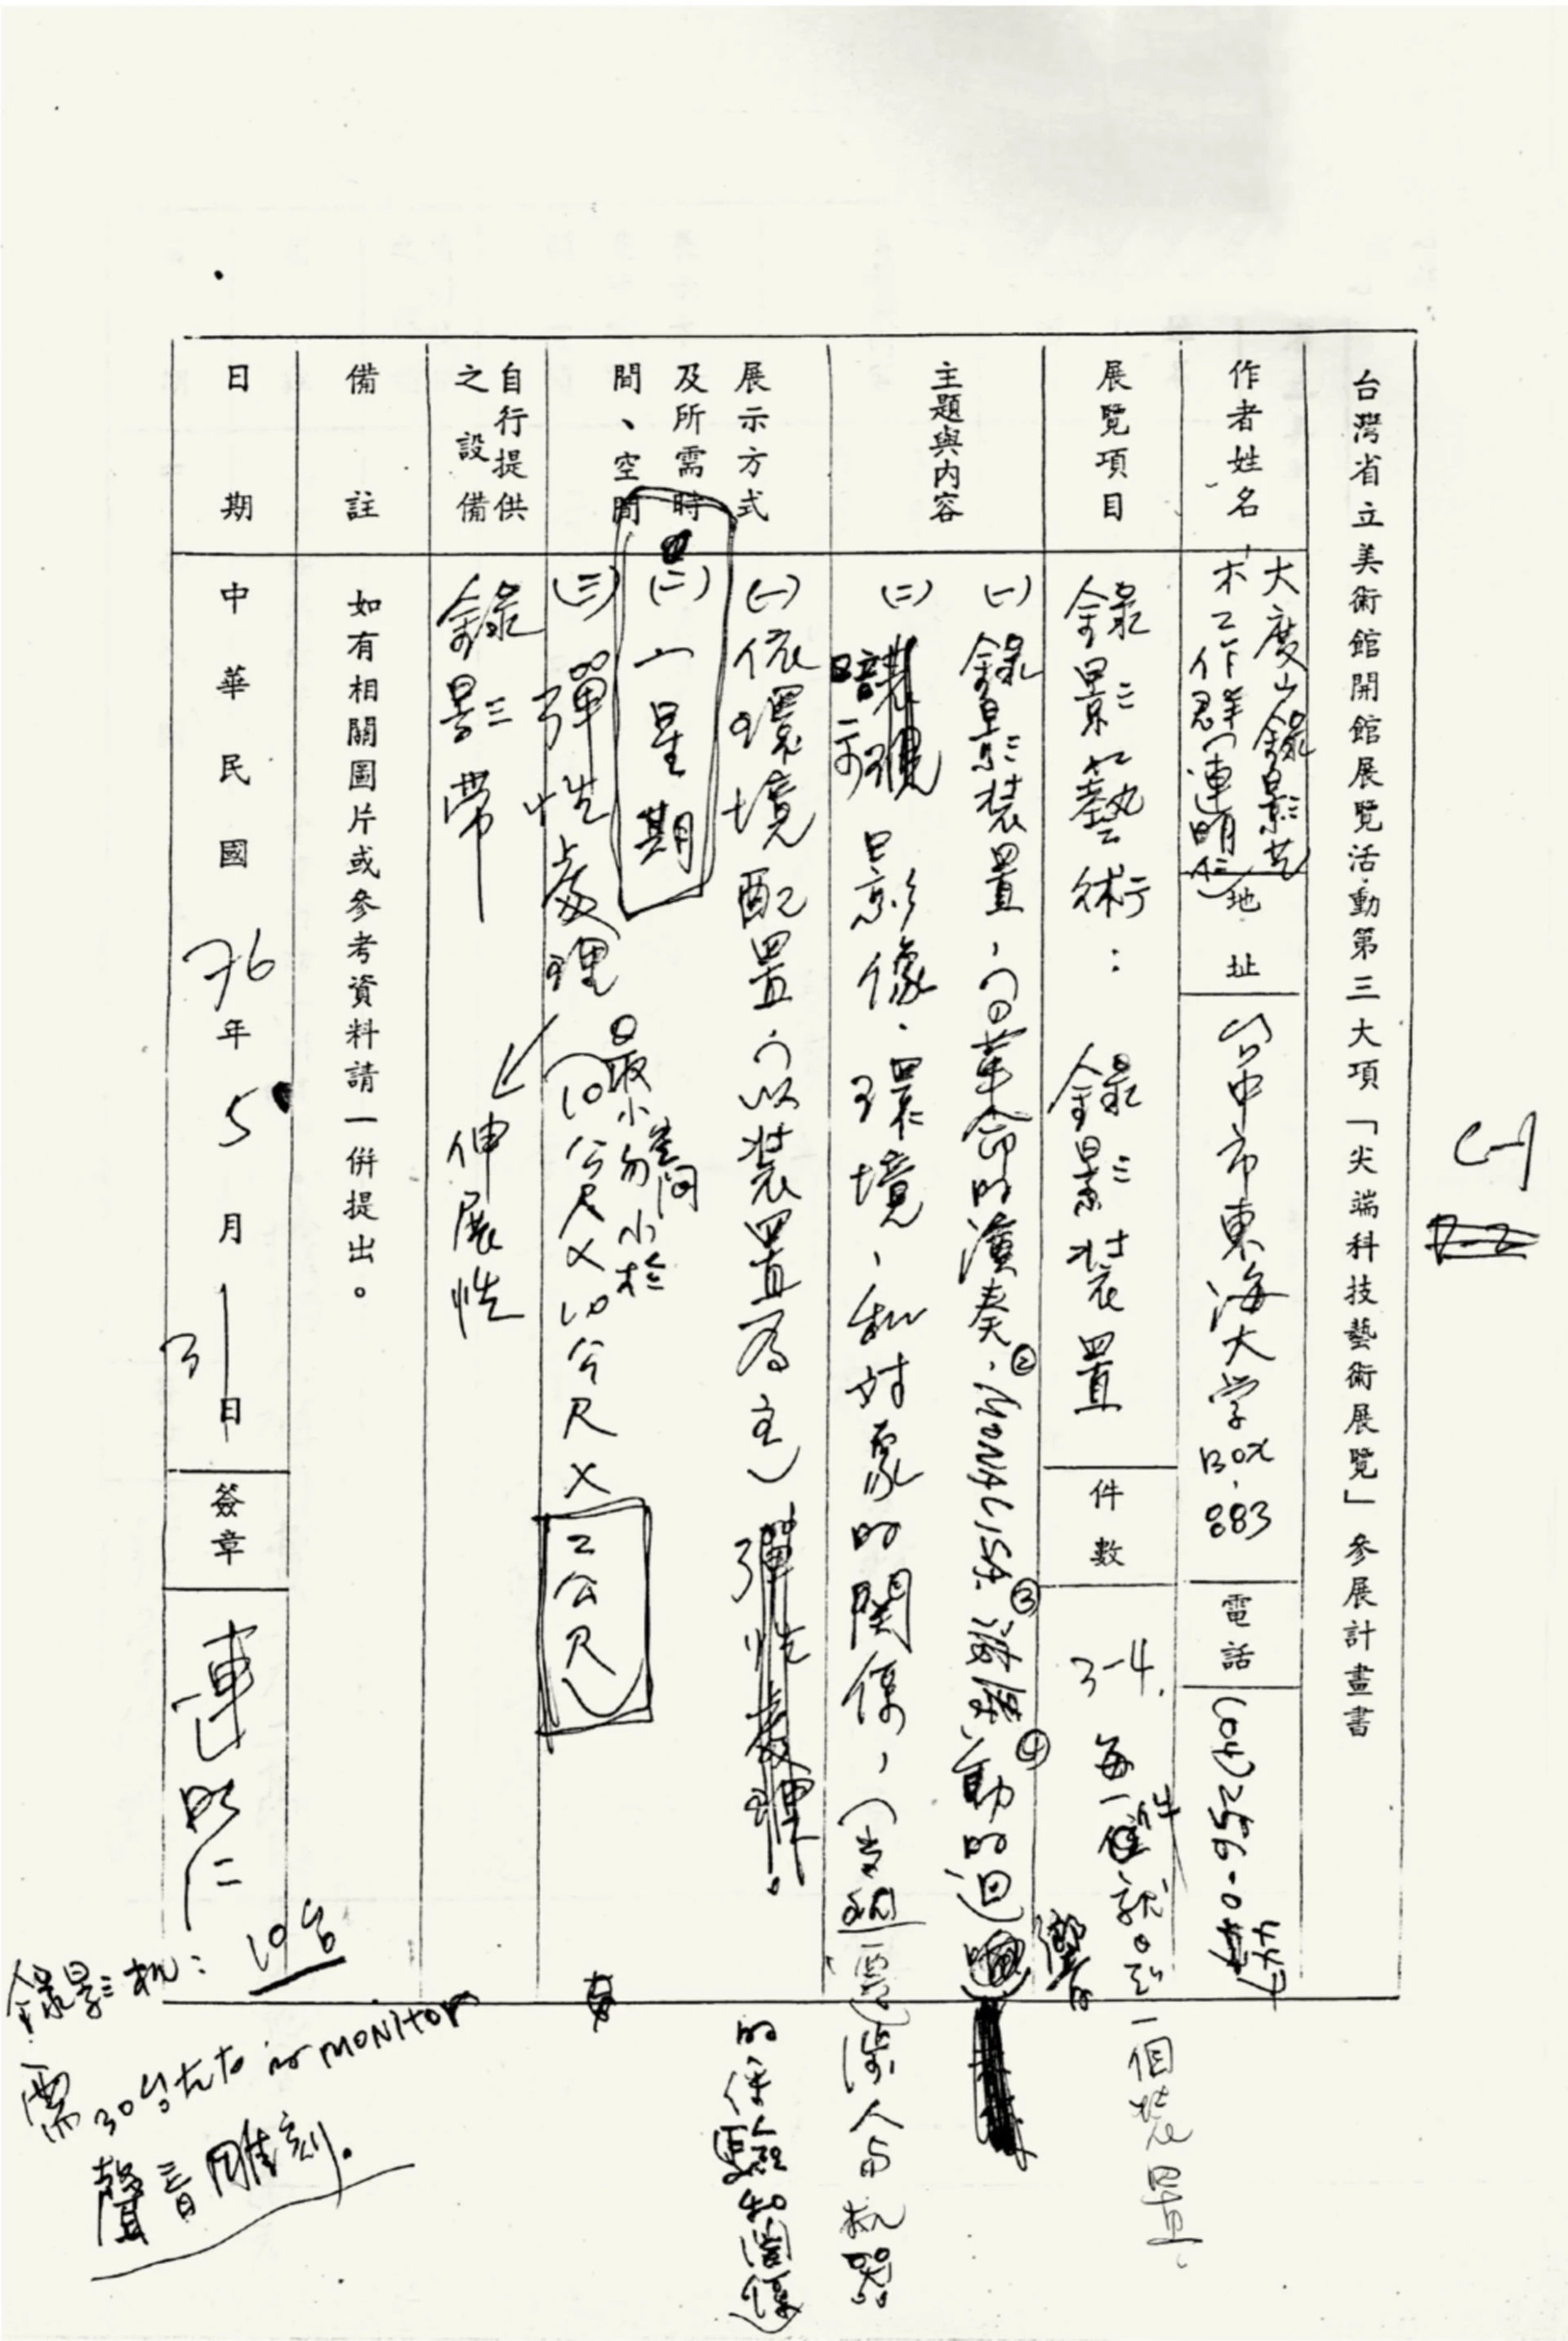 「尖端科技藝術展」之參展計畫書與手寫之會議筆記，1987 ©連明仁提供-圖片